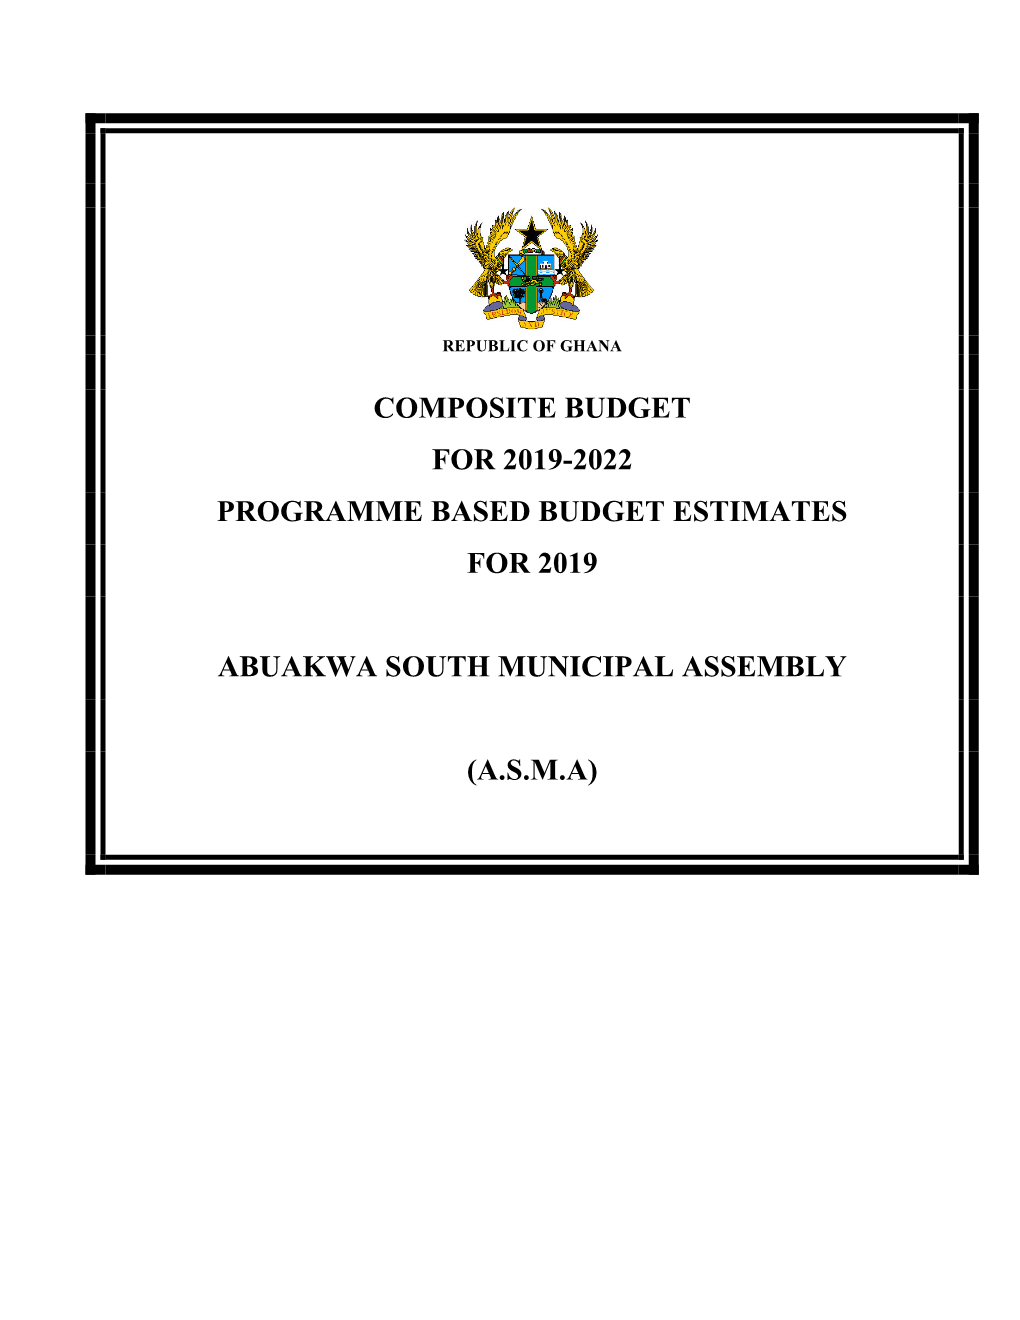 Composite Budget for 2019-2022 Programme Based Budget Estimates for 2019